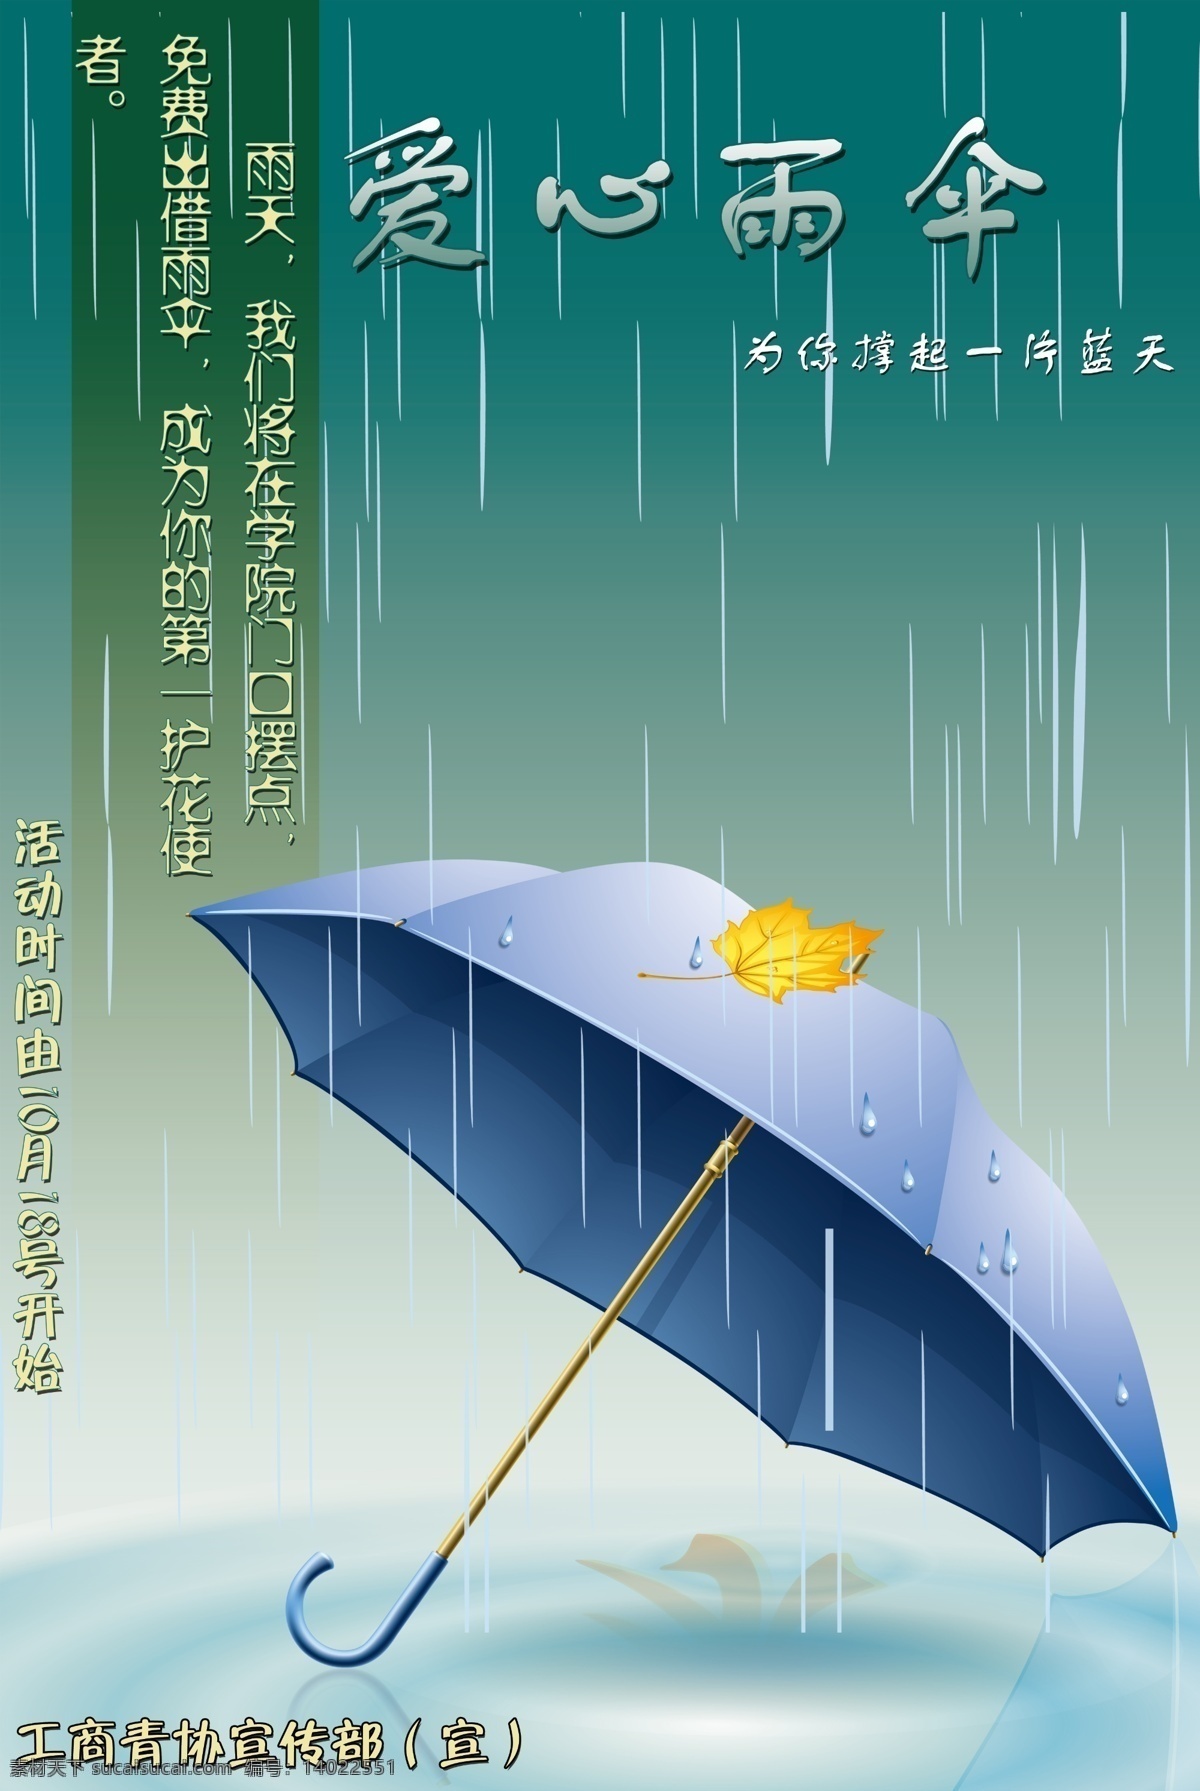 雨伞下雨海报 下雨背景 雨伞 水珠 撑伞 树叶 海报 展板 创意海报 雨 广告设计模板 源文件